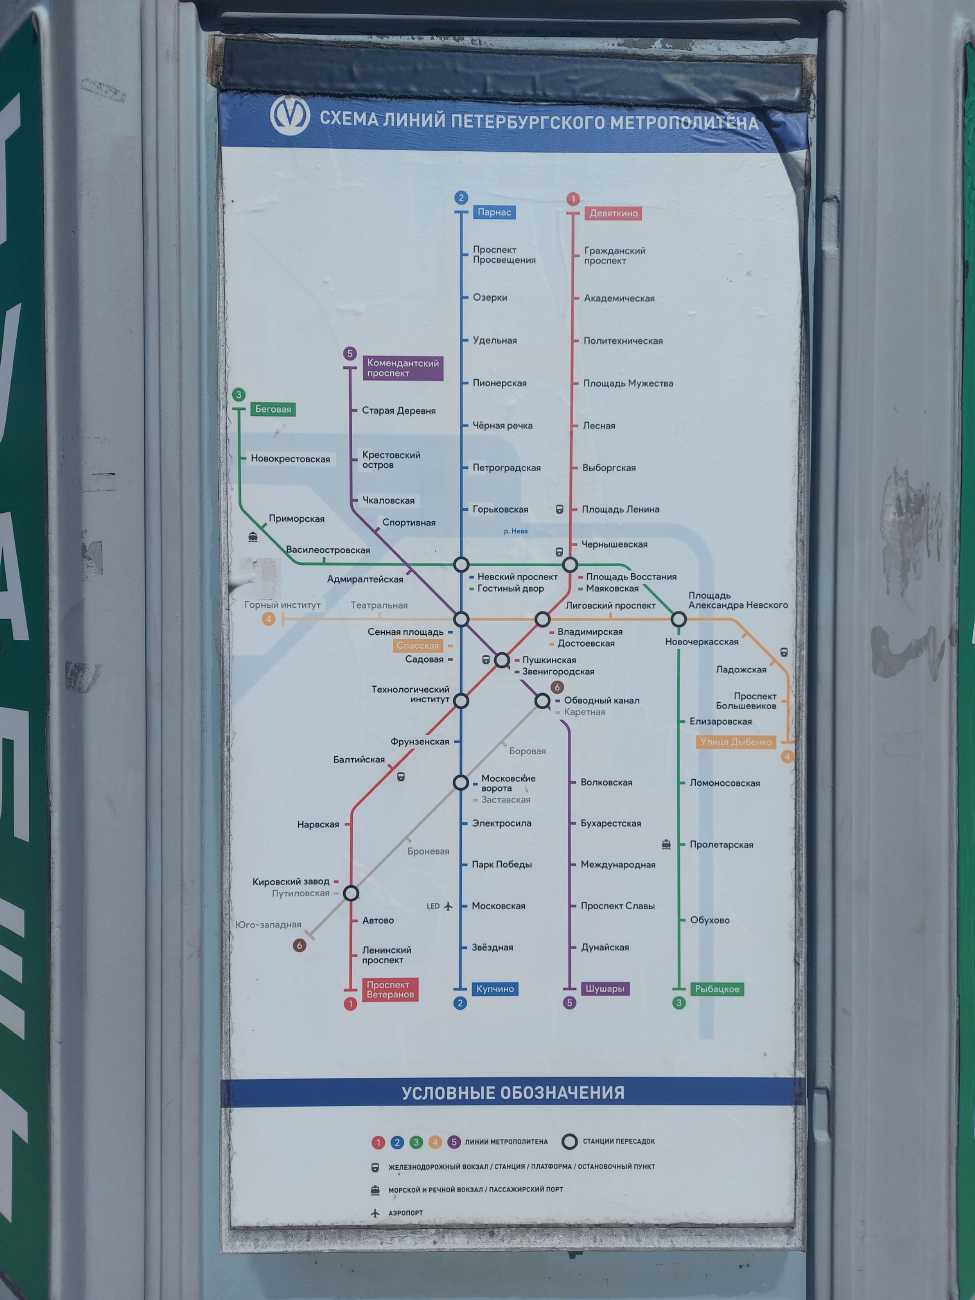 Sankt-Peterburg — Metro — Maps